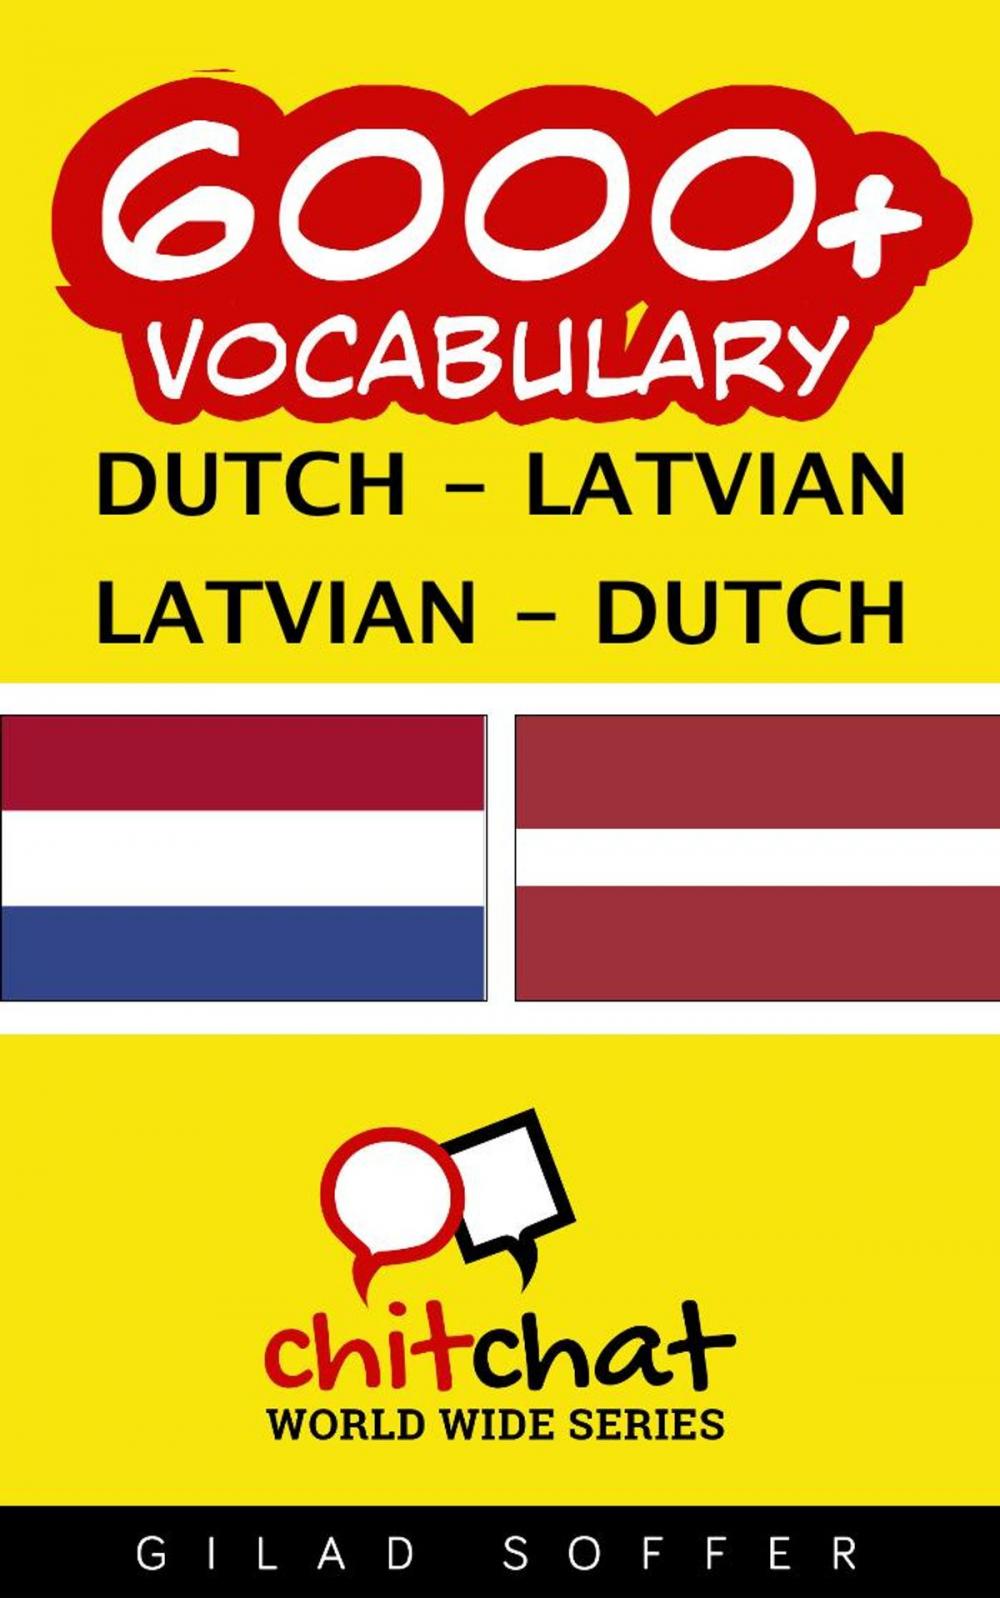 Big bigCover of 6000+ Vocabulary Dutch - Latvian